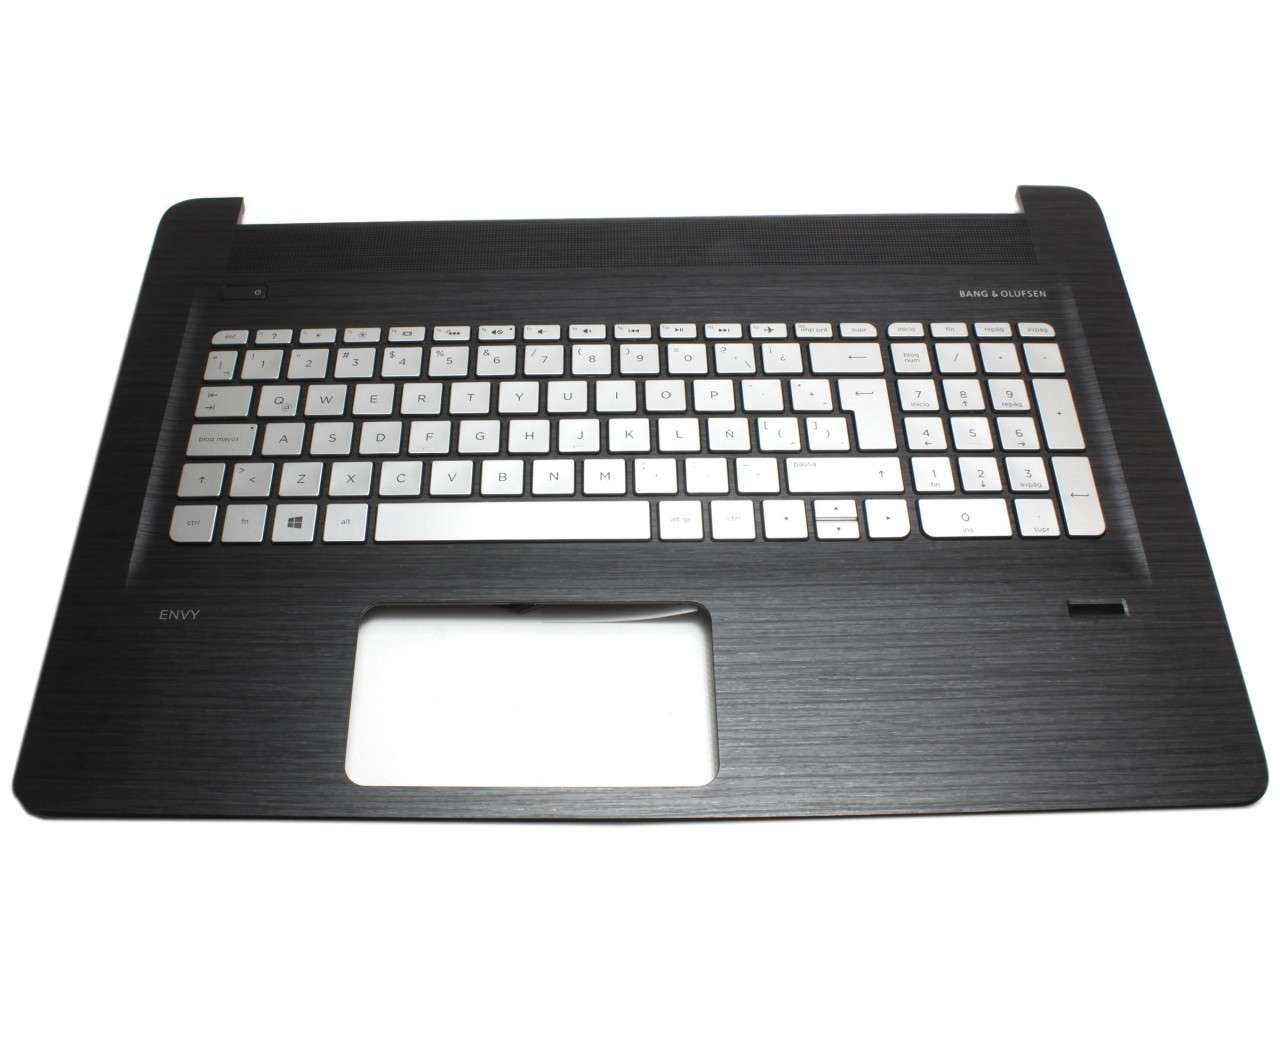 Tastatura HP 813678 161 argintie cu Palmrest negru iluminata backlit 161